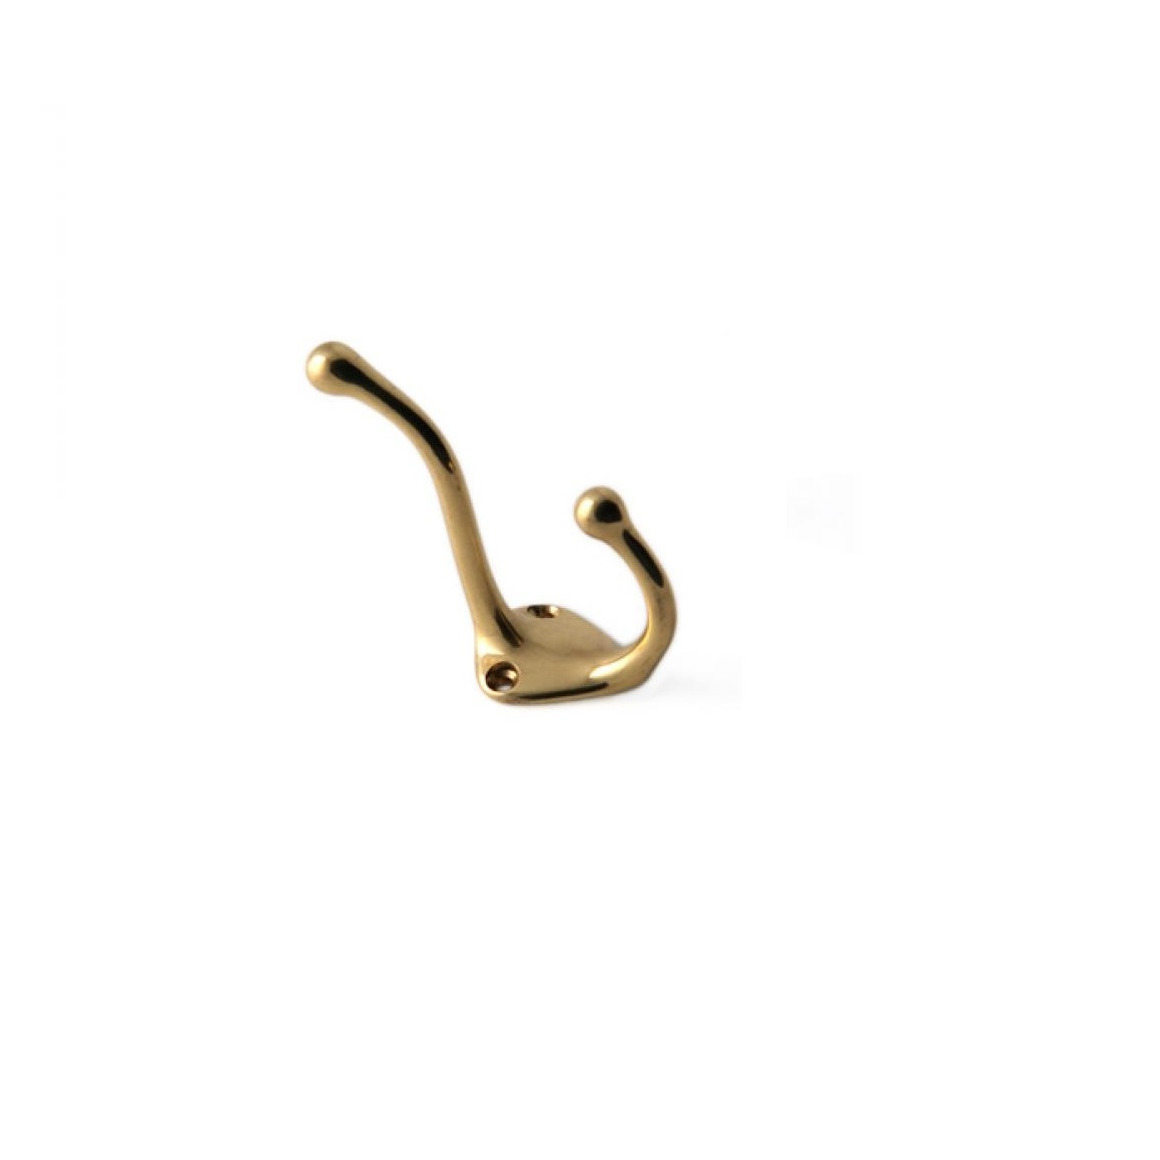 1x Luxe kapstokhaken-jashaken-kapstokhaakjes messing goudkleurig enkele haak 7,5 x 3,2 cm